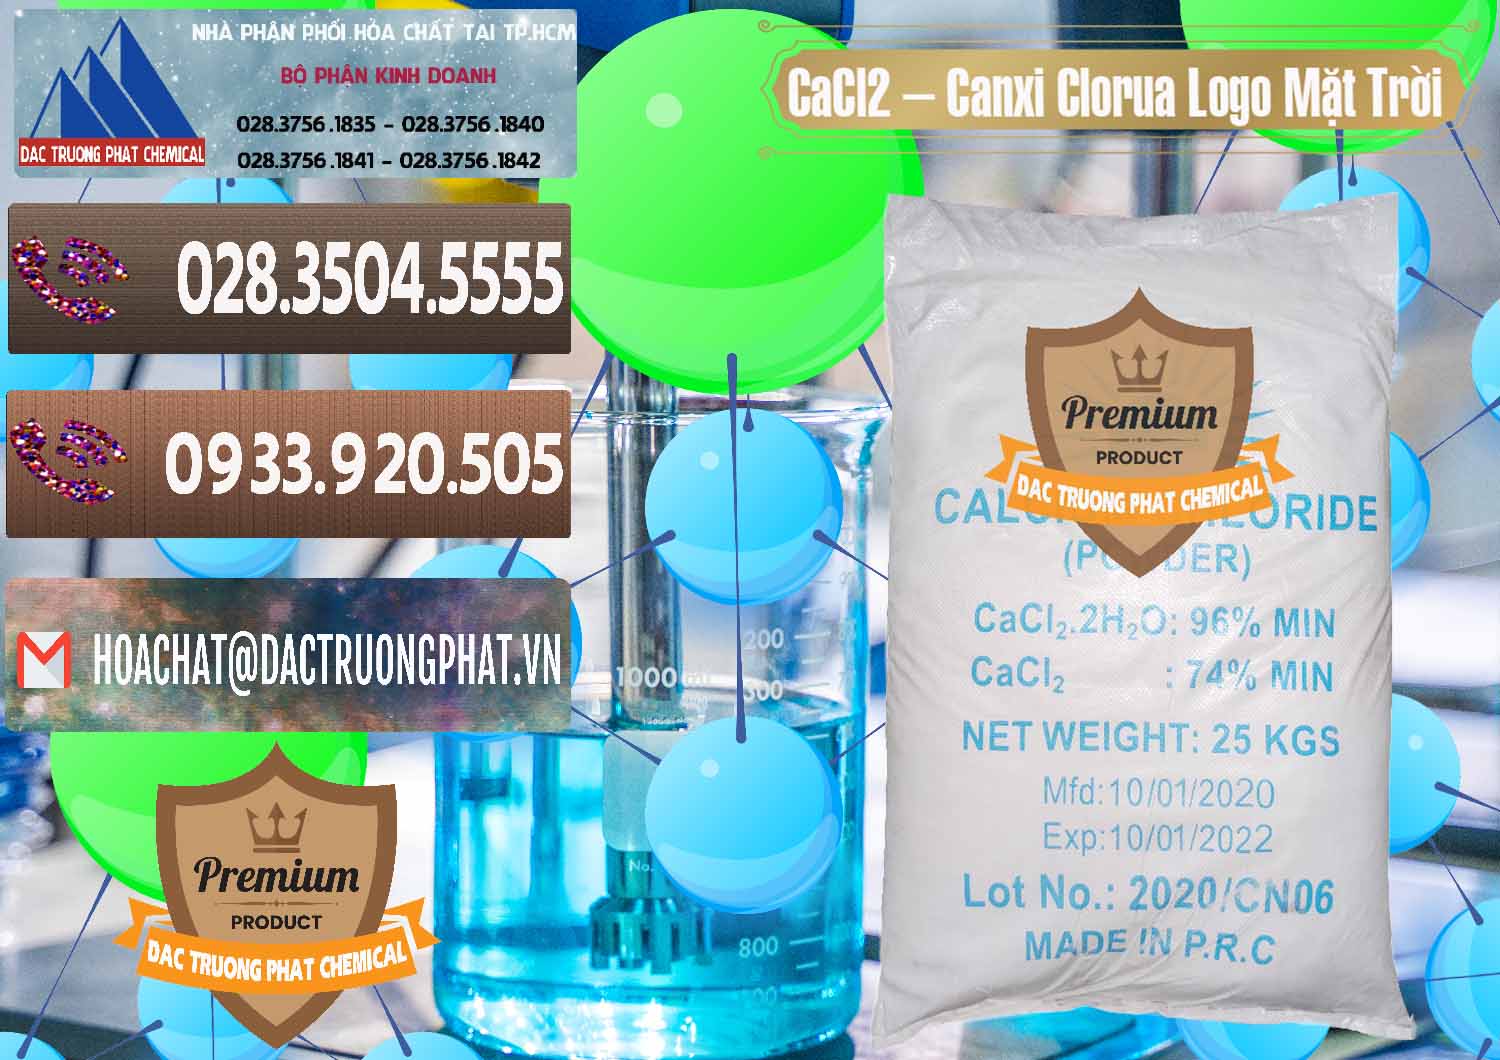 Công ty cung ứng và bán CaCl2 – Canxi Clorua 96% Logo Mặt Trời Trung Quốc China - 0041 - Cty kinh doanh _ phân phối hóa chất tại TP.HCM - hoachatviet.net